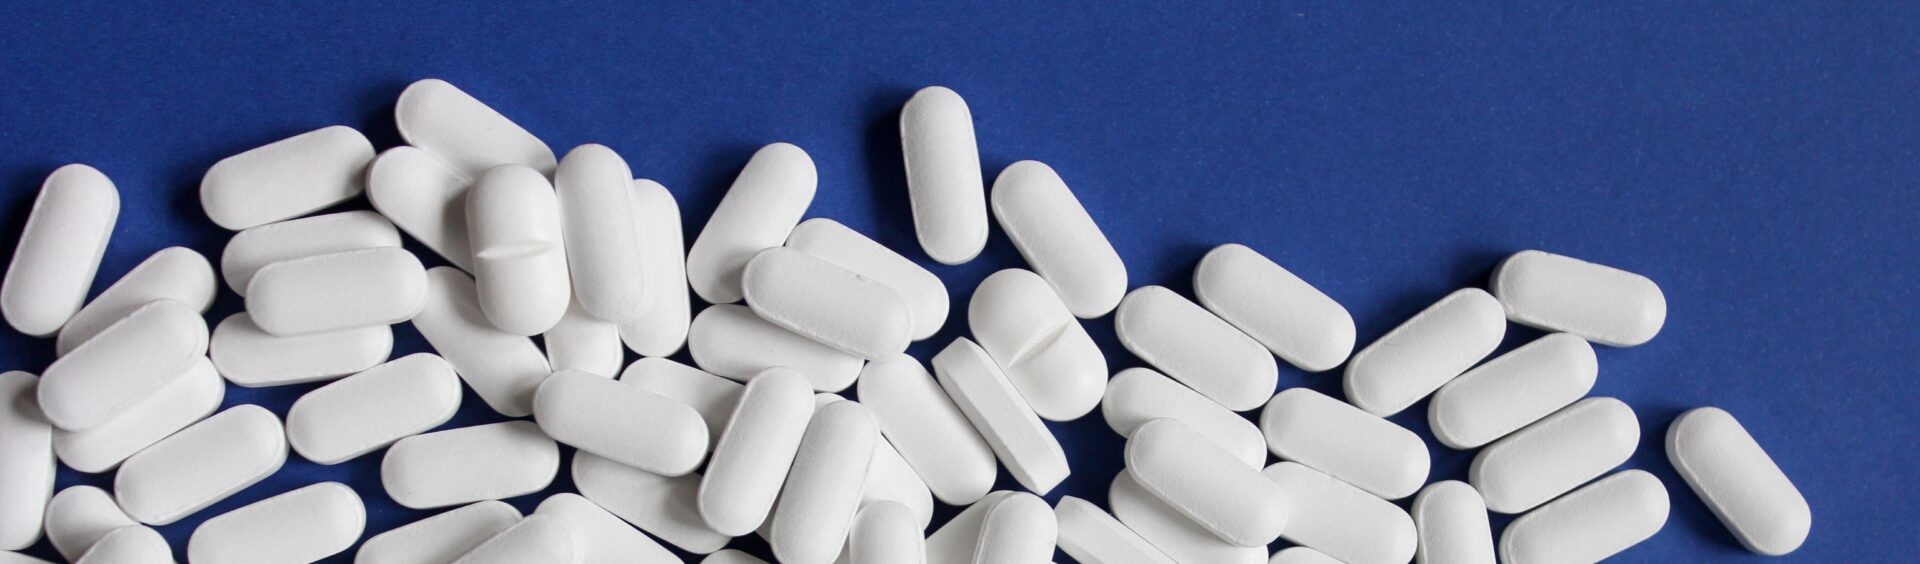 várias pílulas brancas em cima de um plano azul